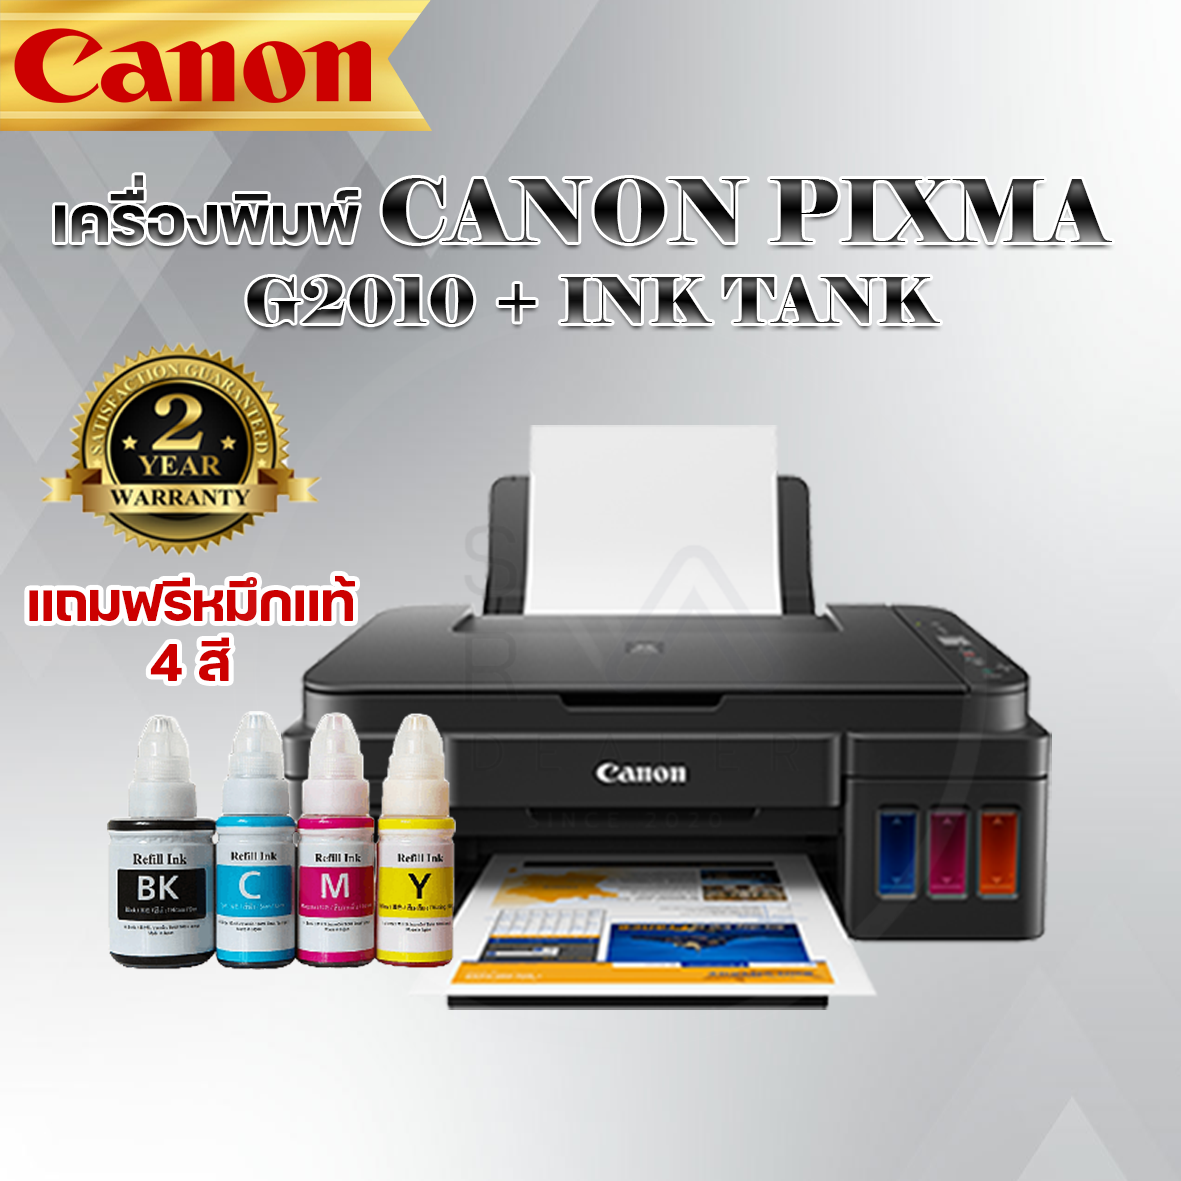 เครื่องปรินเตอร์ CANON PIXMA G2010 + INK TANK ฟรีหมึกแท้ รับประกัน2ปี